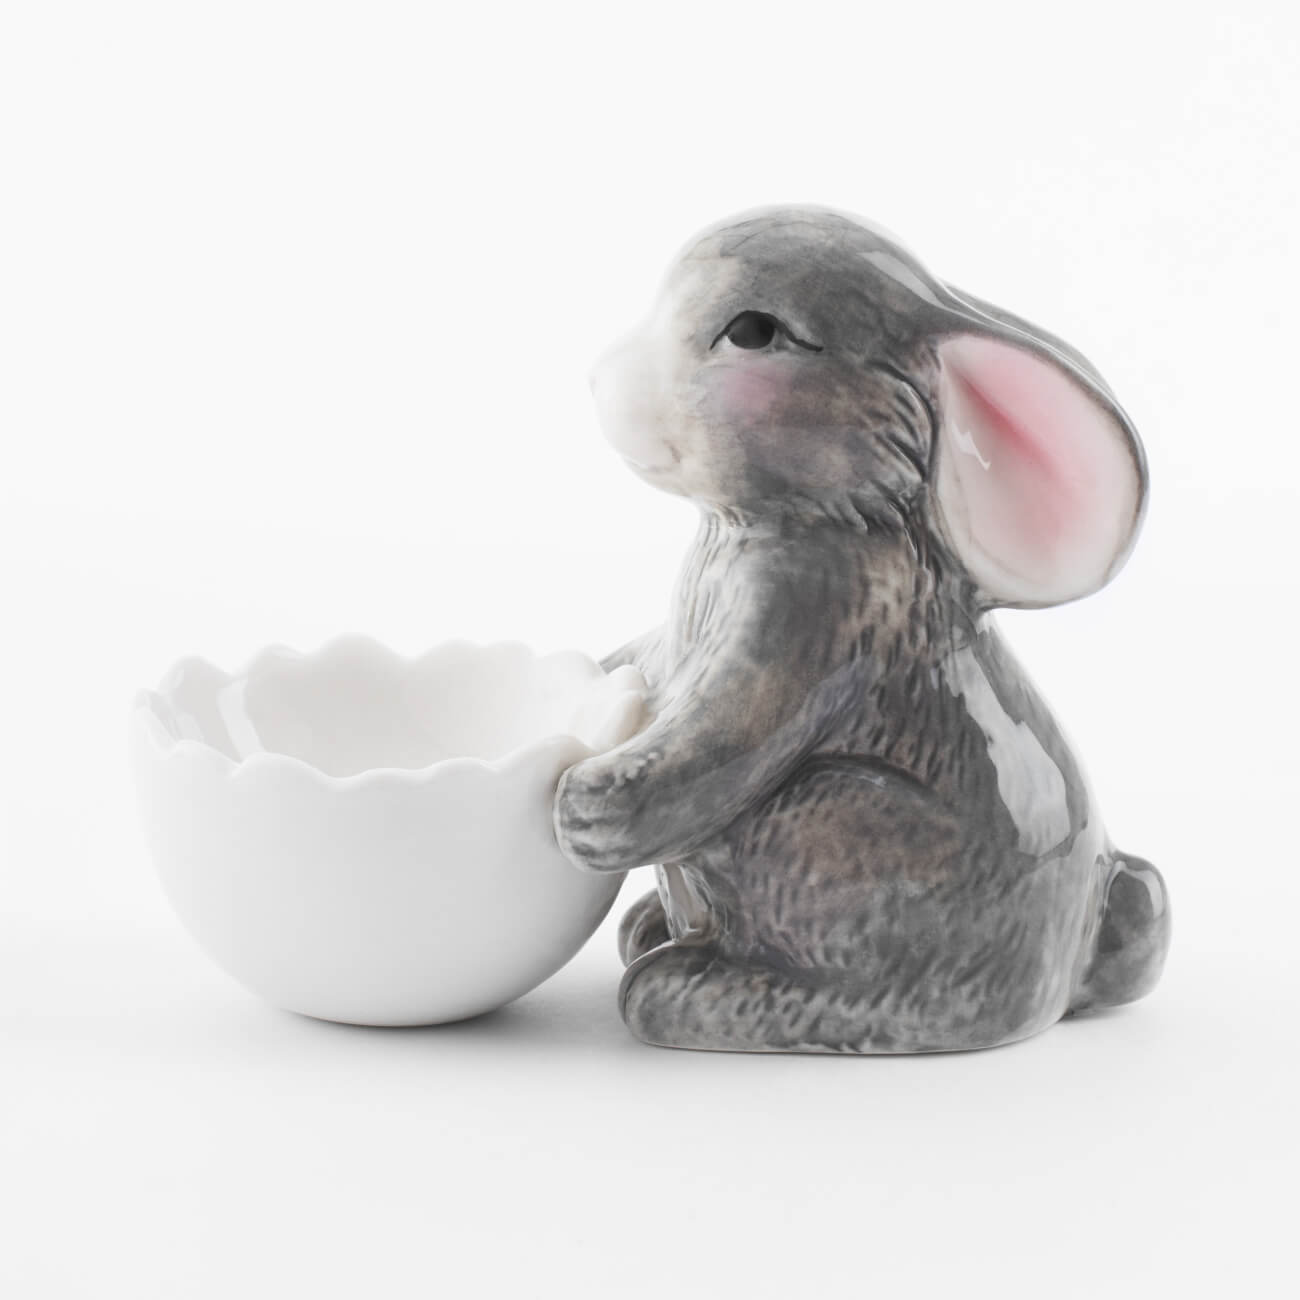 Подставка для яйца, 11 см, фарфор P, бело-серая, Кролик со скорлупой, Pure Easter подставка для рекламы officespace